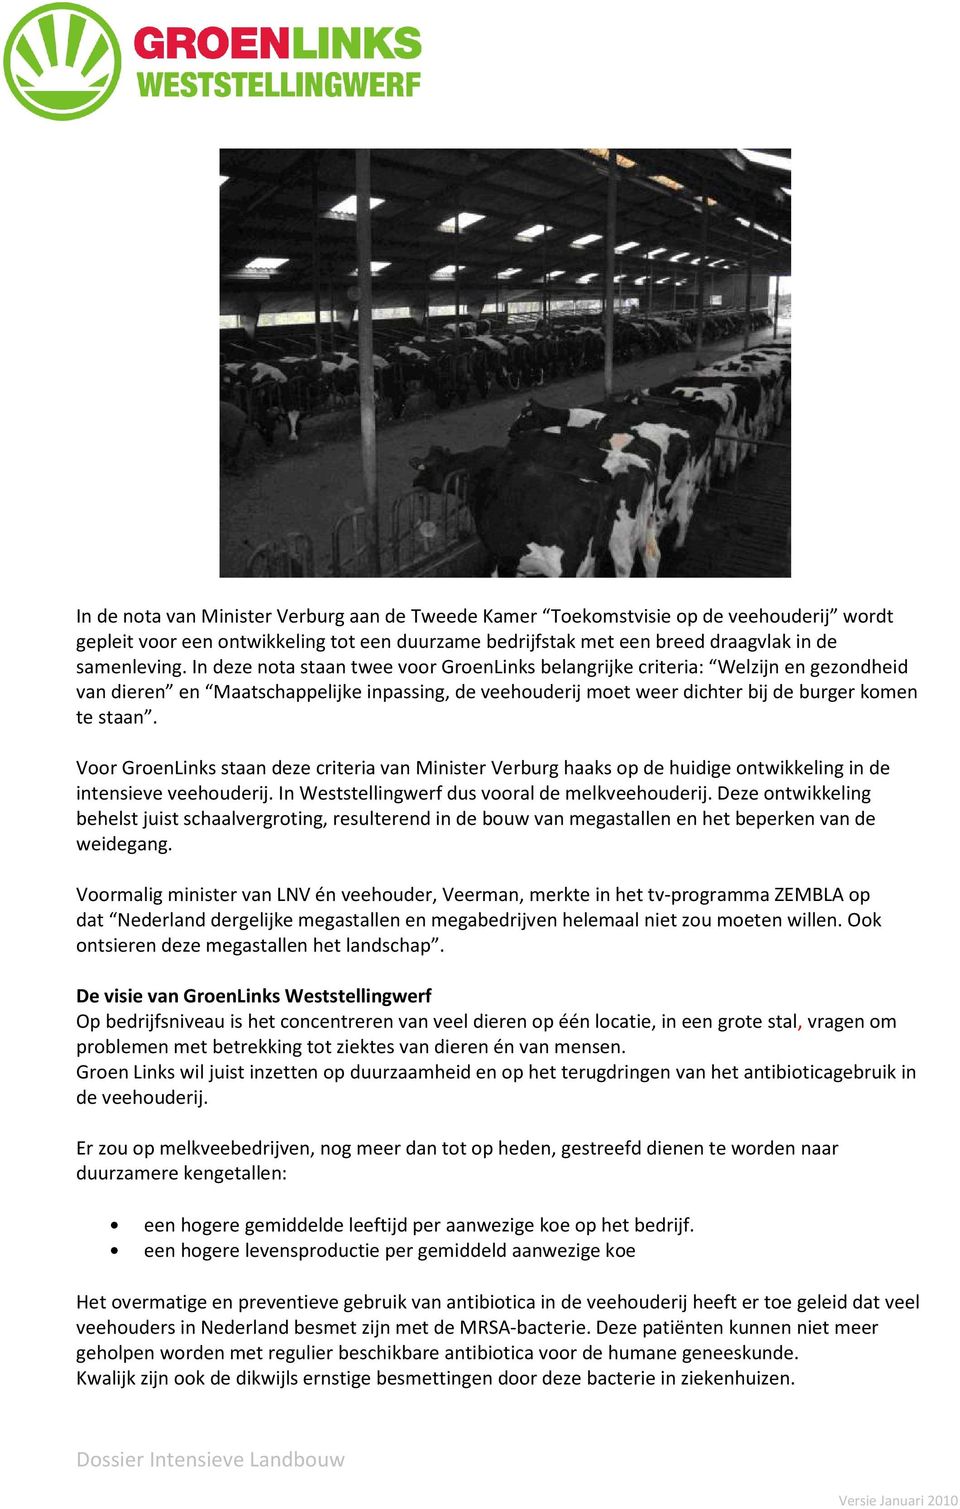 Voor GroenLinks staan deze criteria van Minister Verburg haaks op de huidige ontwikkeling in de intensieve veehouderij. In Weststellingwerf dus vooral de melkveehouderij.